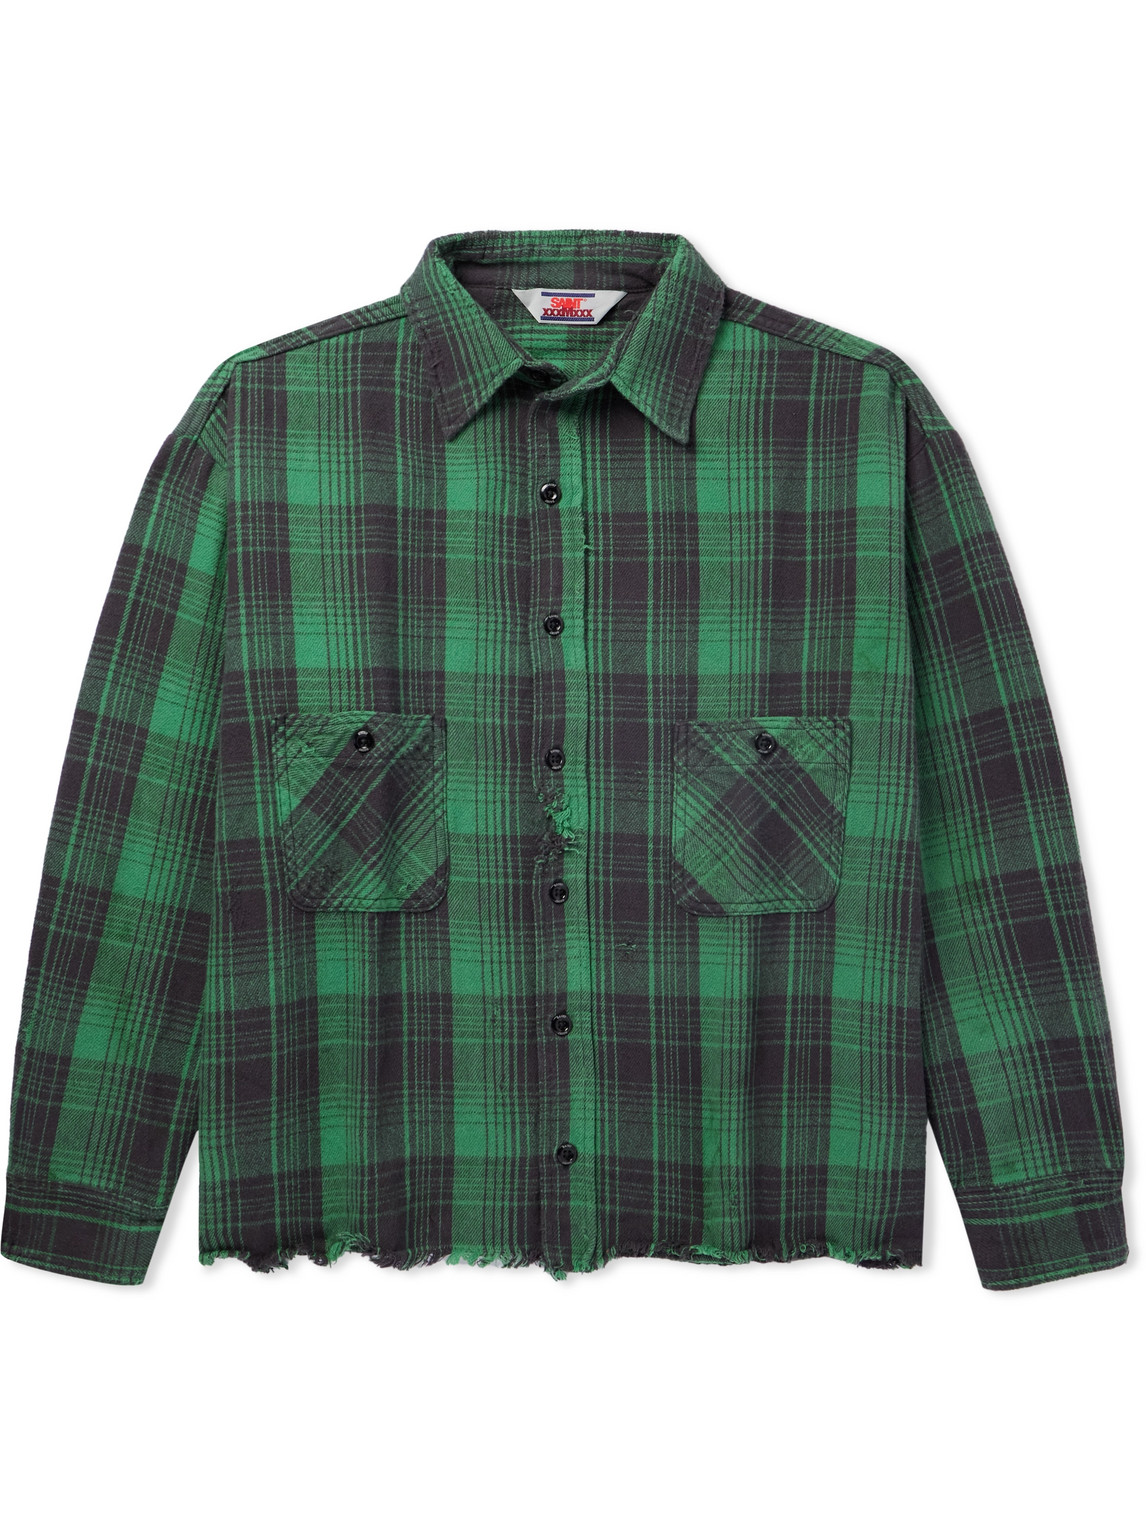 SAINT Mxxxxxx - Distressed Checked Cotton-Flannel Shirt - Men - Green - XL von SAINT Mxxxxxx